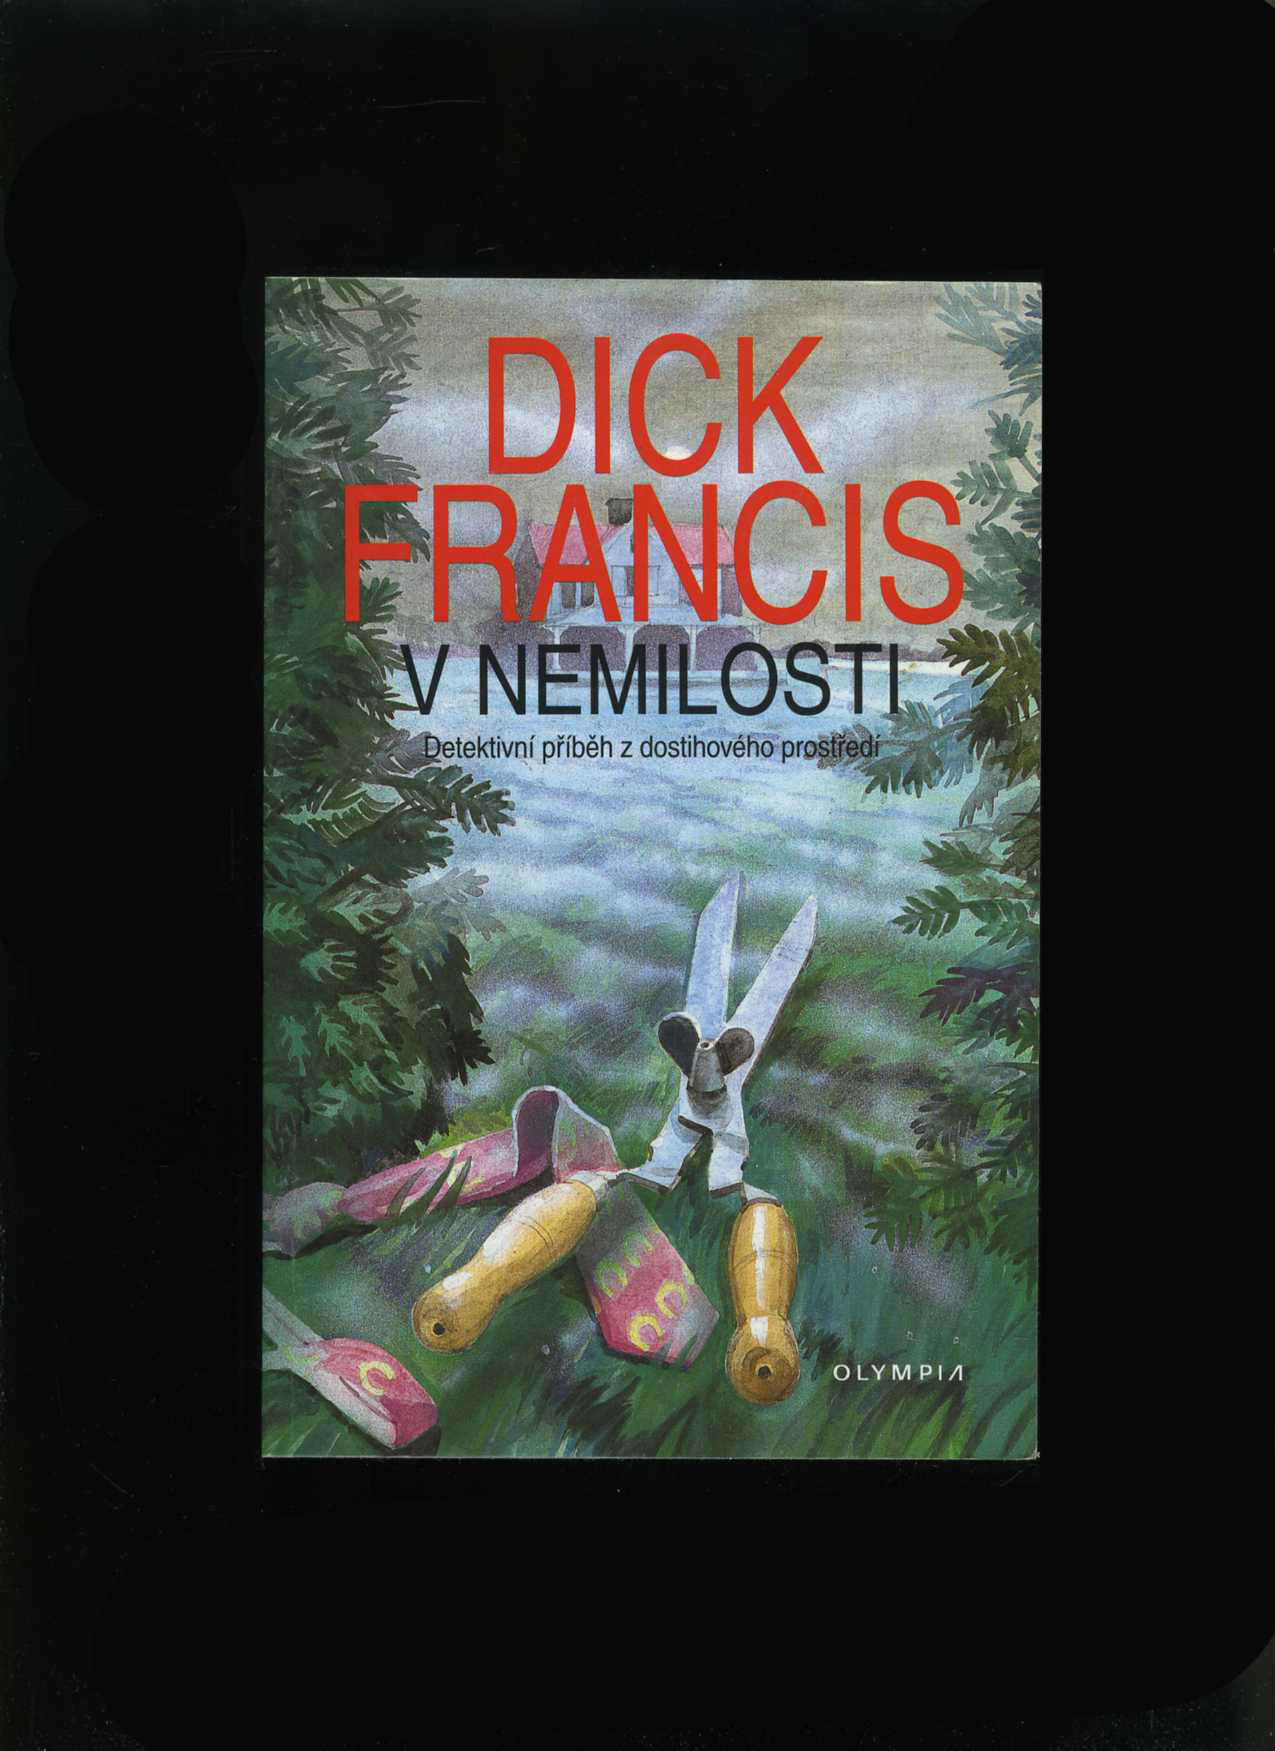 V nemilosti (Dick Francis)